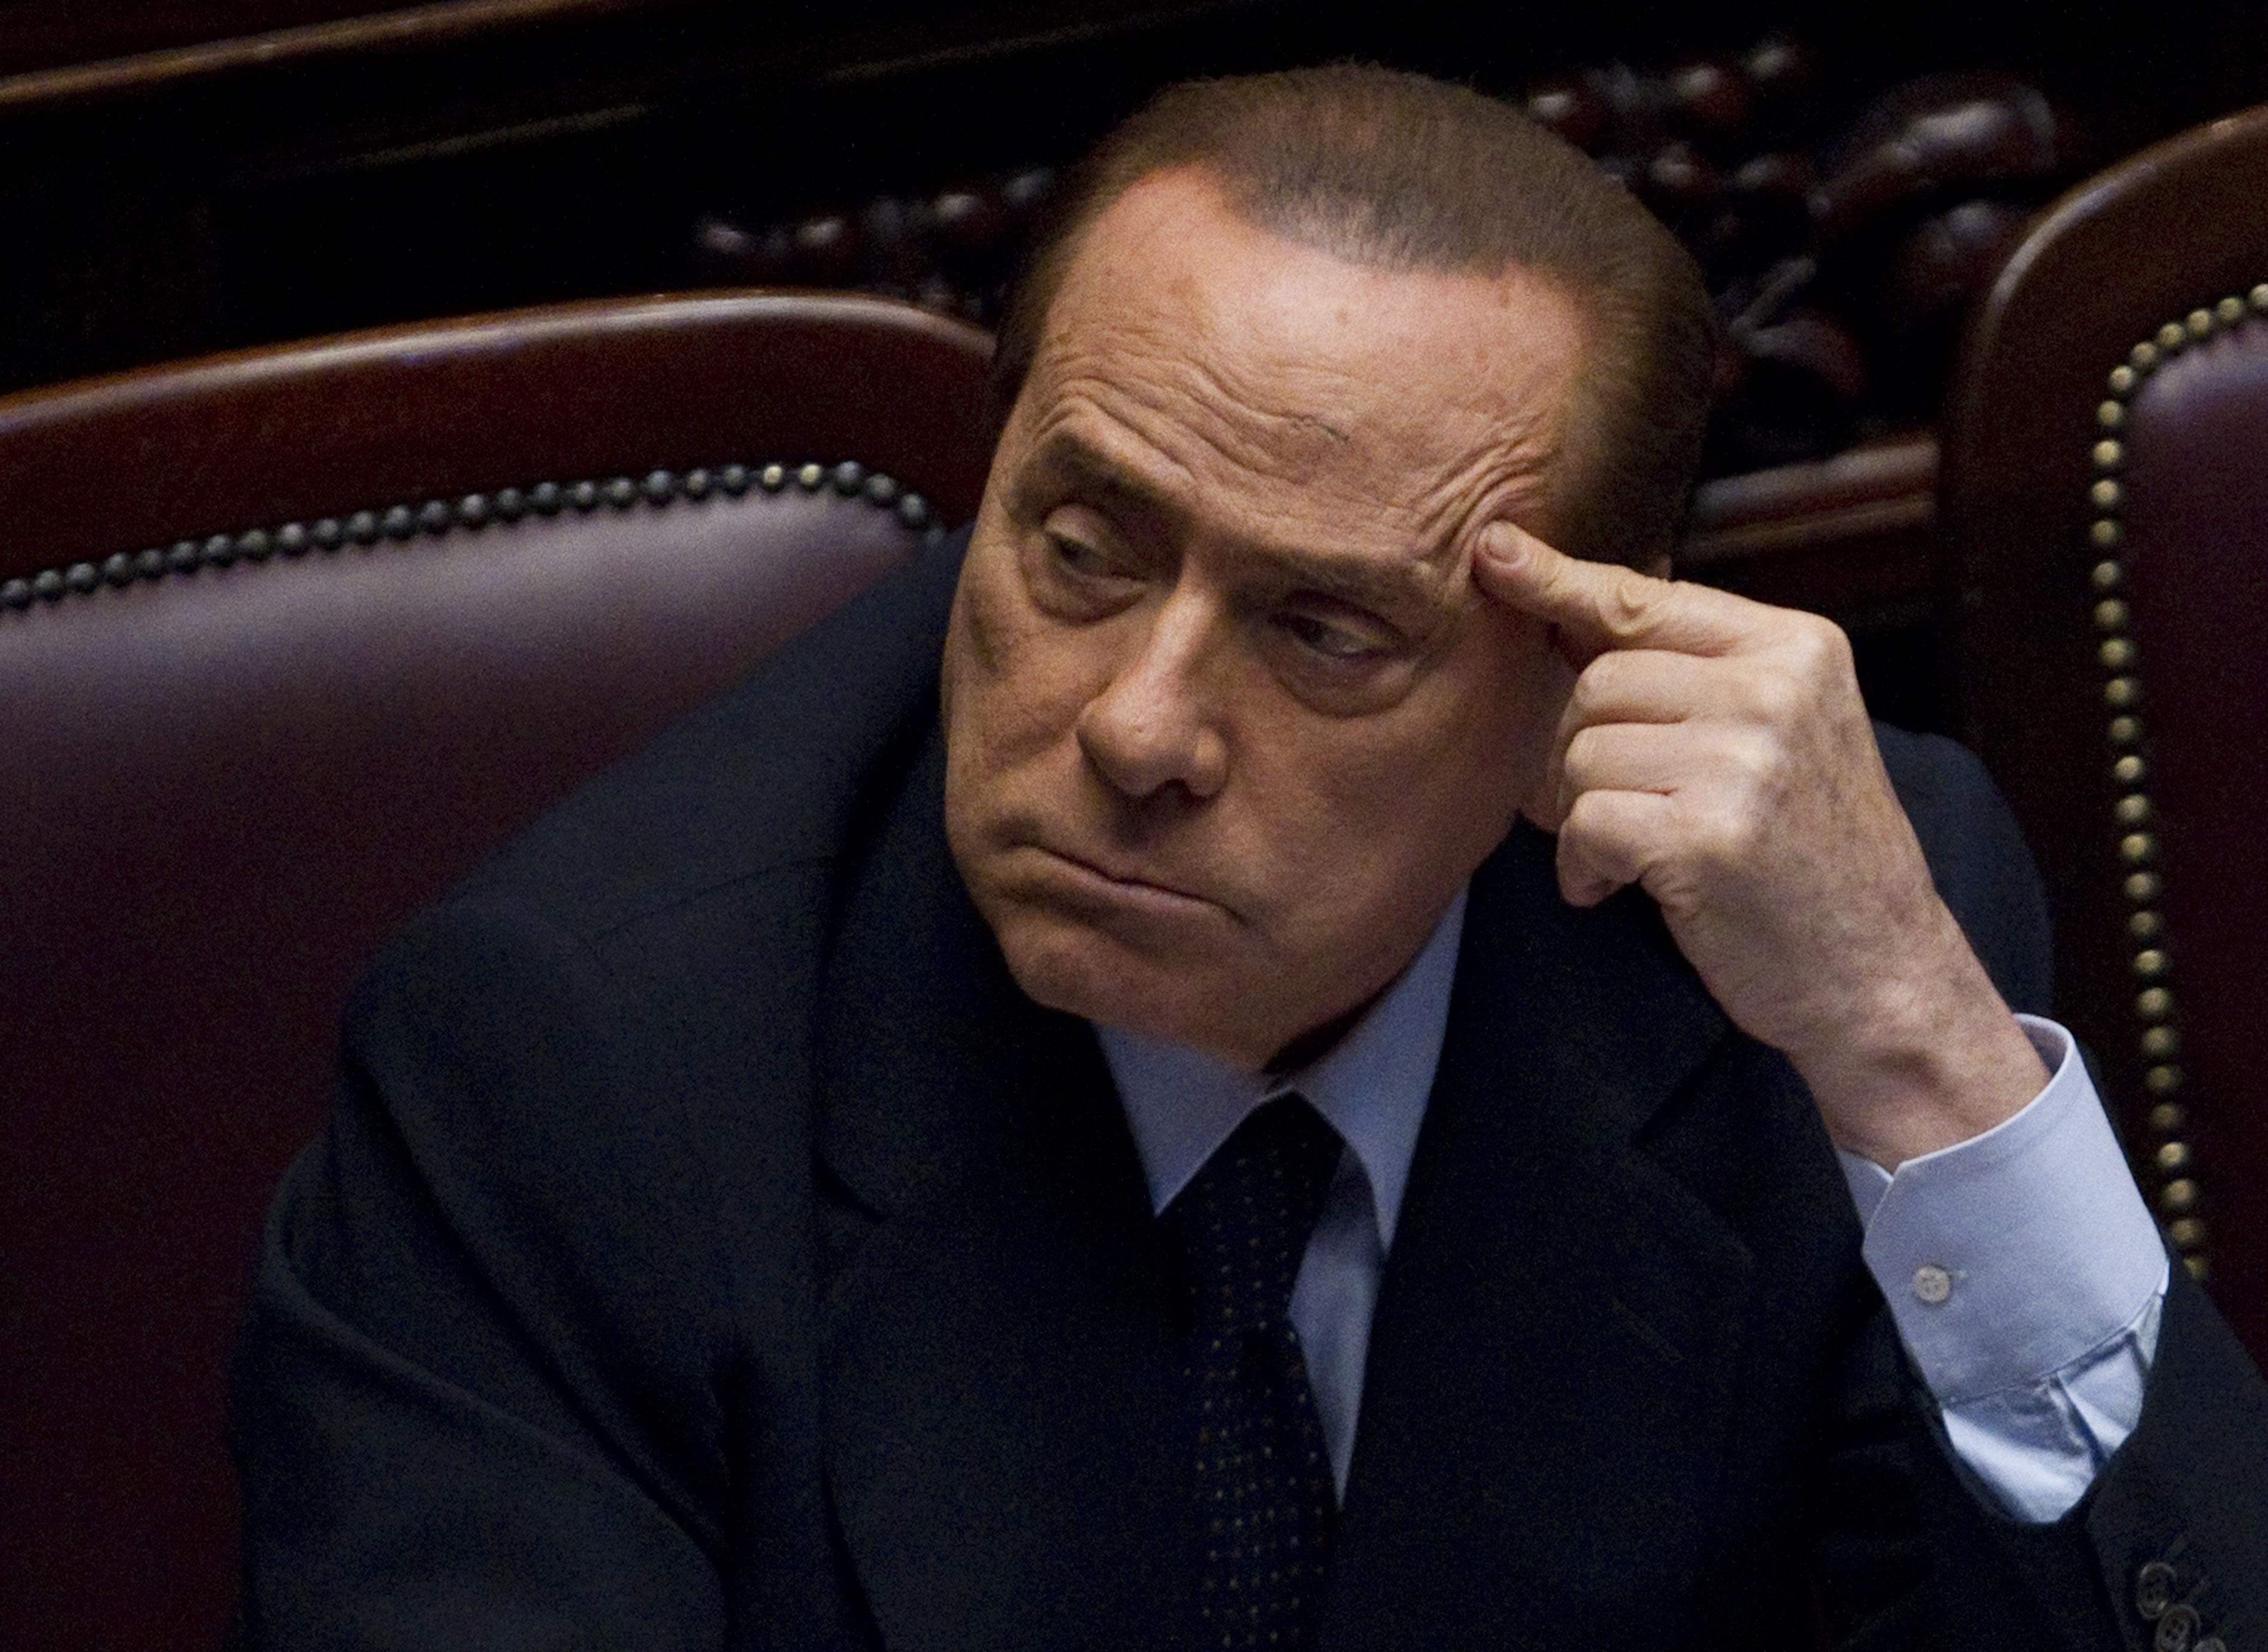 Berlusconi, Brott och straff, Utpressning, Italien, Politik, Köp av sexuell tjänst, Silvio Berlusconi, Sexualbrott, Prostitution, Sex- och samlevnad